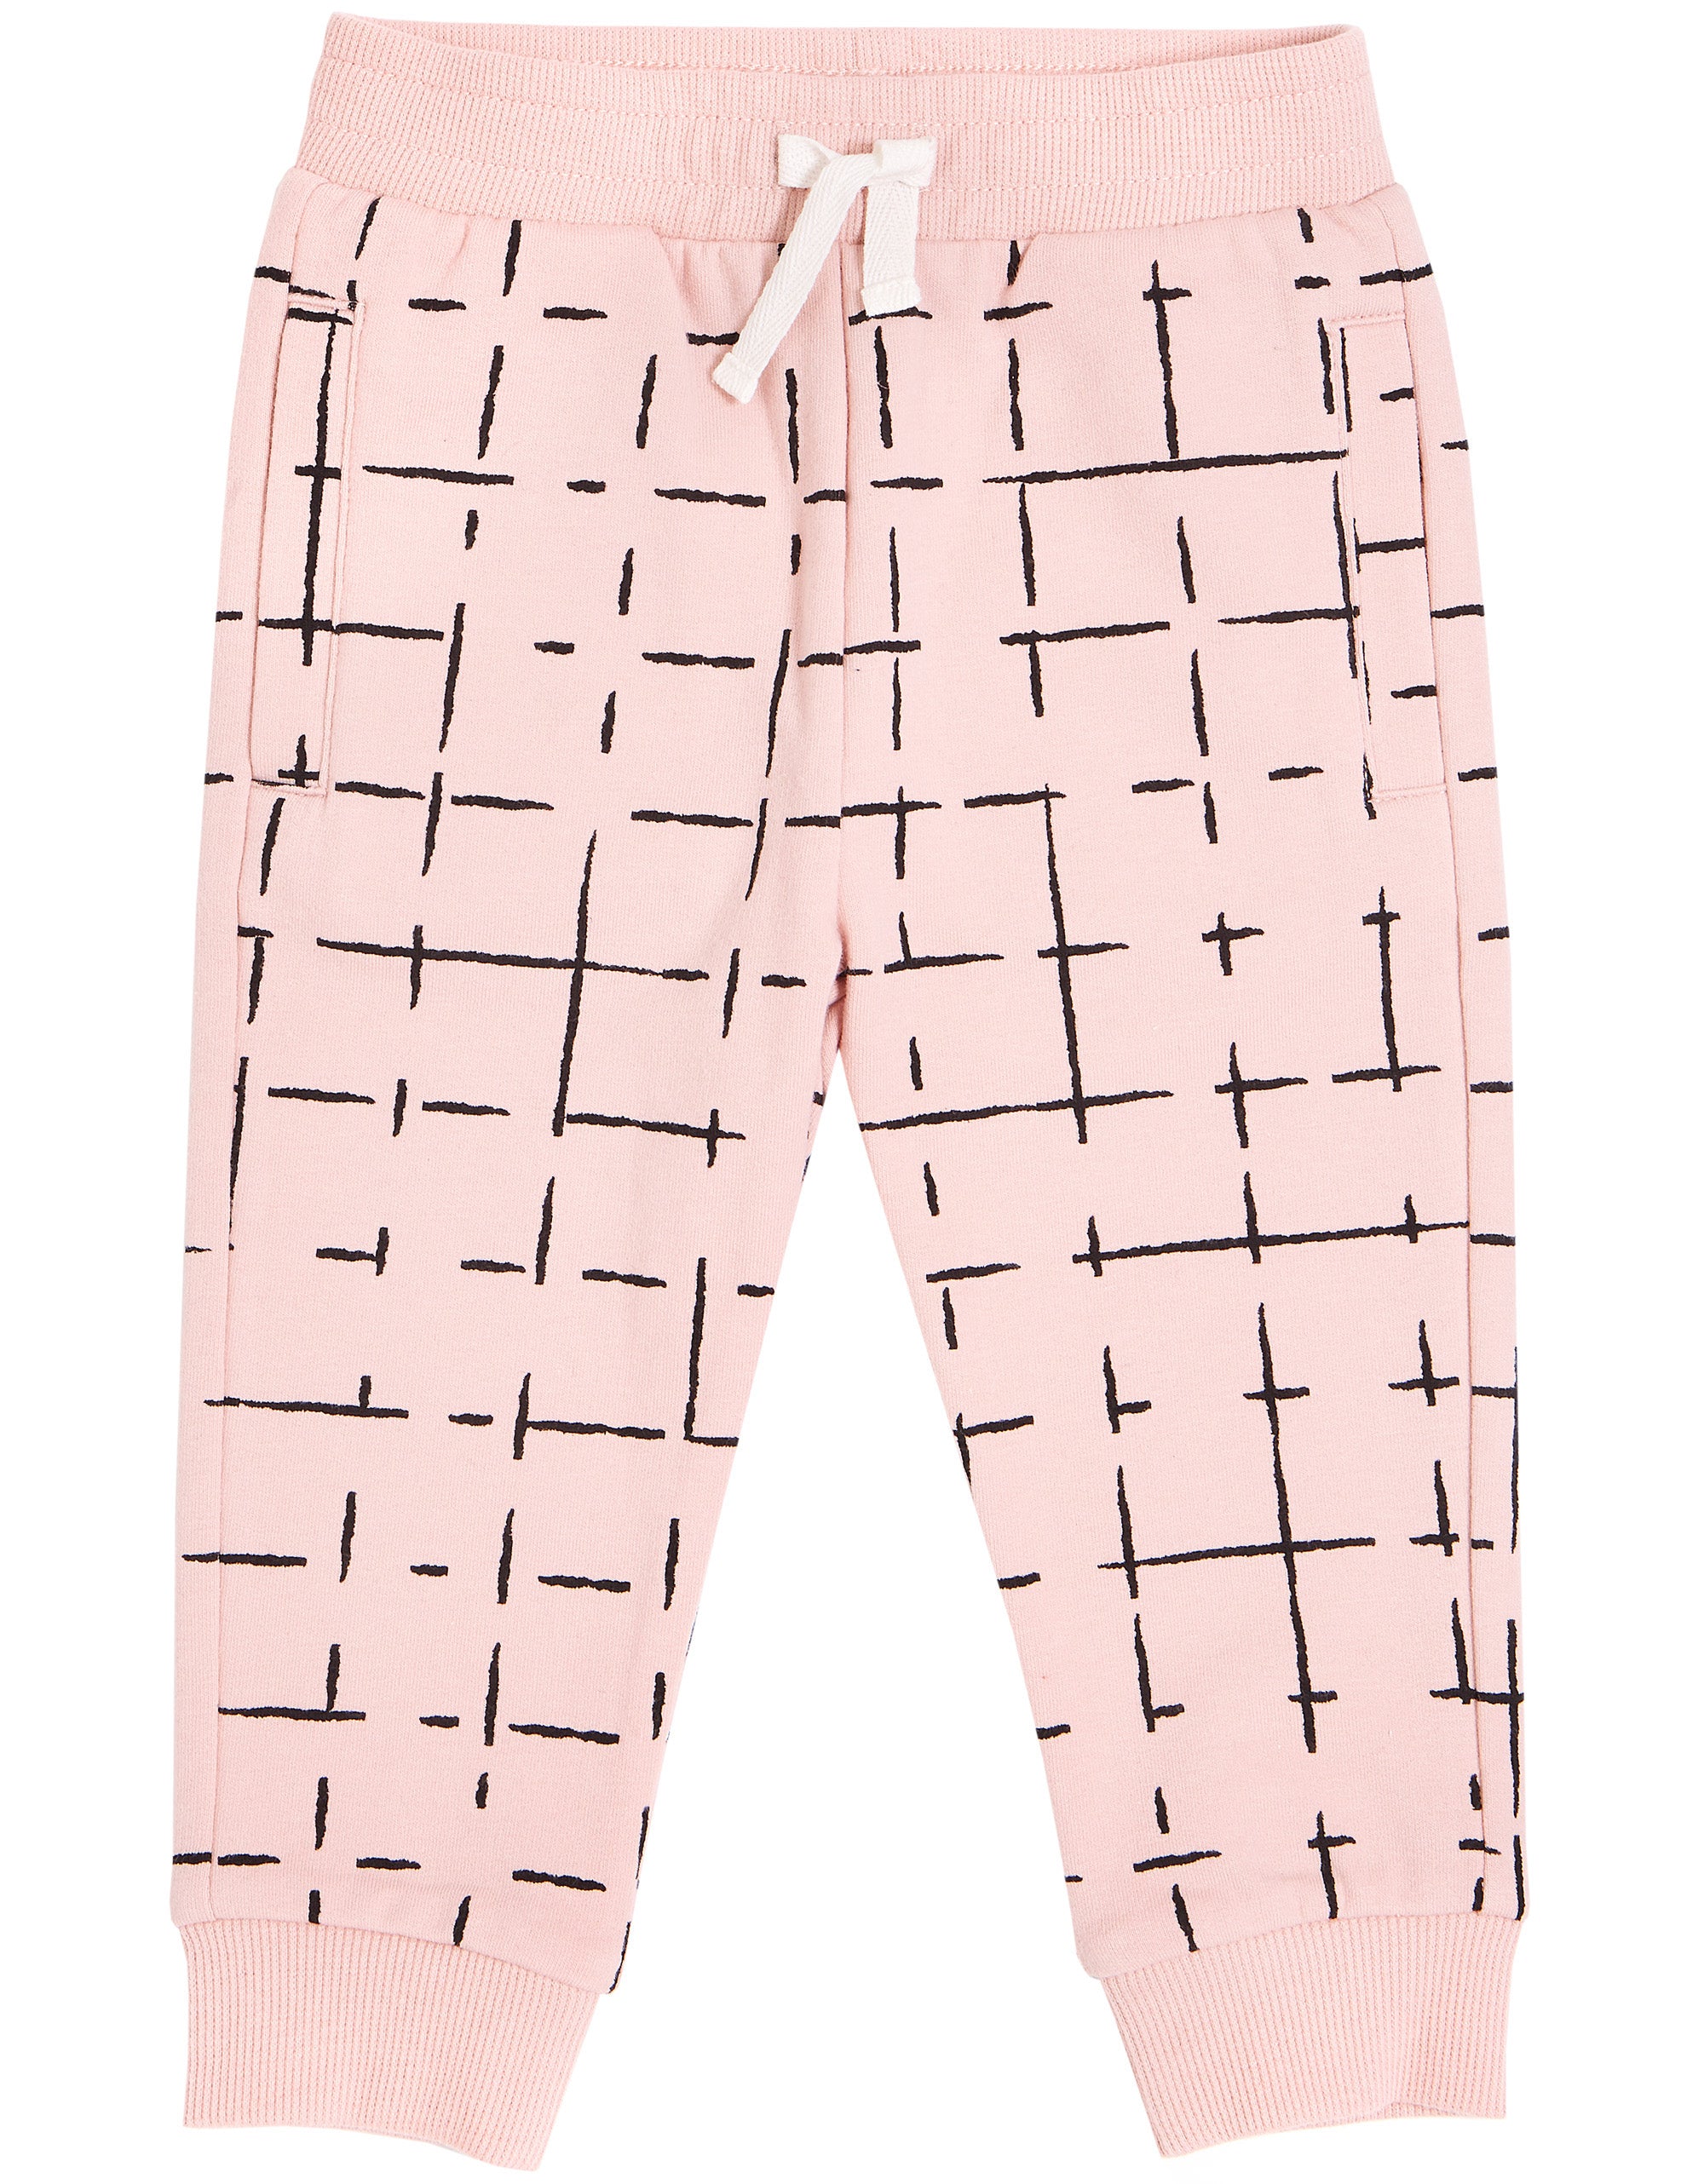 Knit Pants - Pink Grid